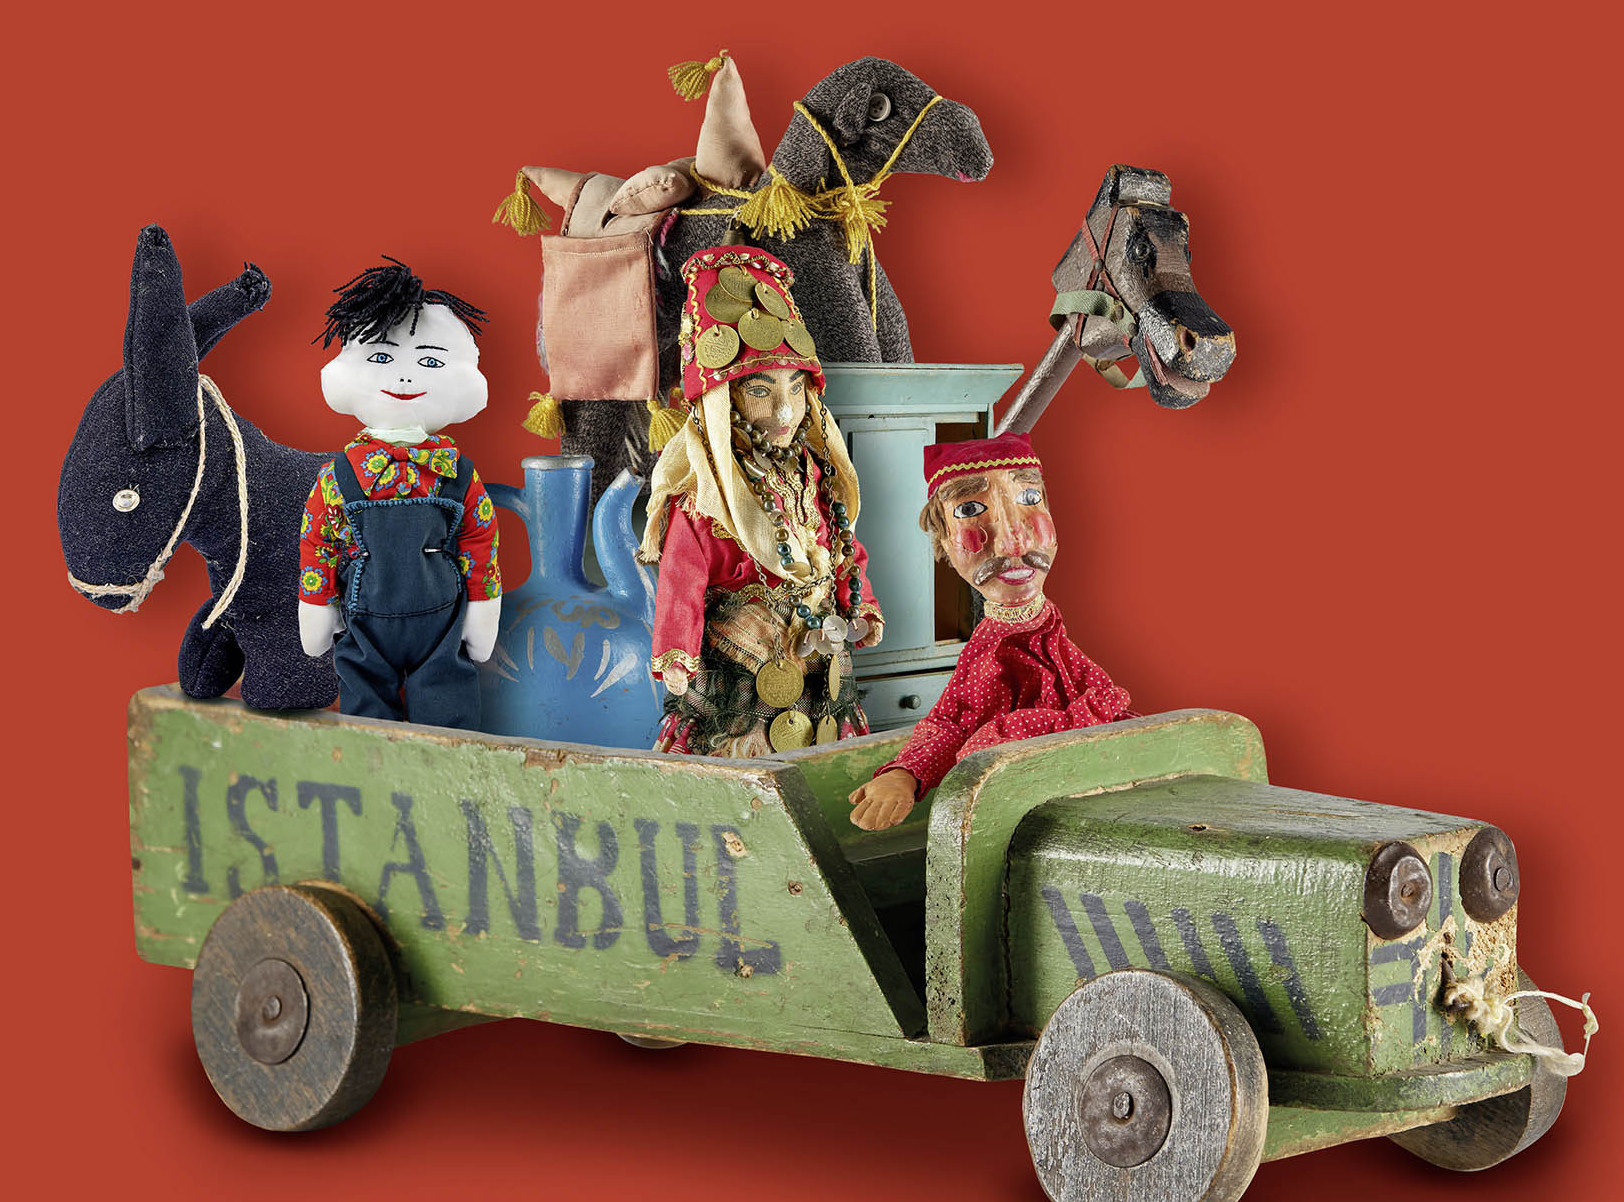 Die Abbildung zeigt eine Objektcollage, bestehend aus verschiedenen Spielzeugfiguren, die in einem Holzspielzeuglastwagen sitzen, auf dem Istanbul steht. Die Fotoaufnahme stammt vom Spielzeugmuseum. 